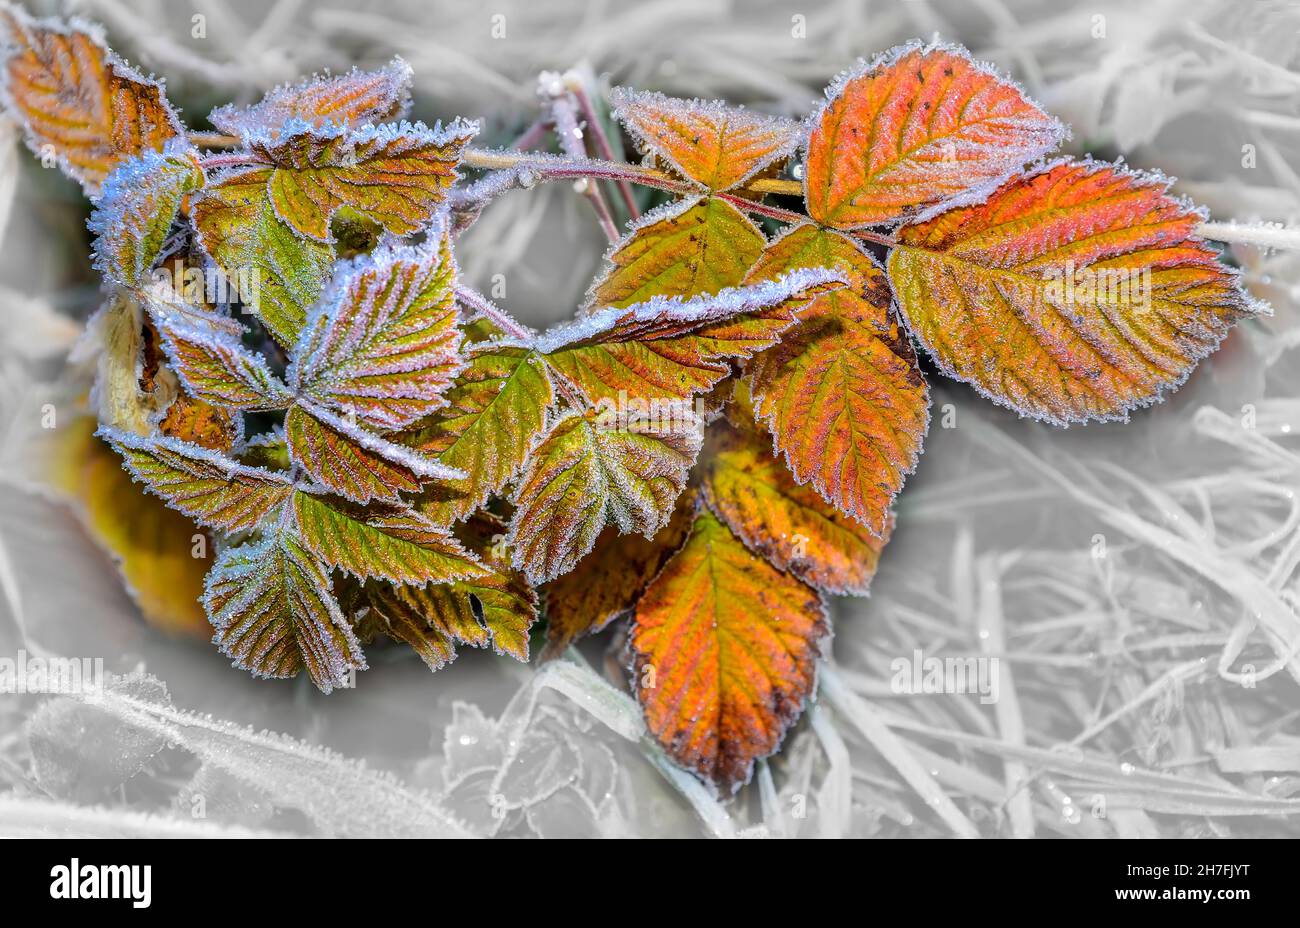 Mattierte helle Herbstblätter der Pflanze mit morgendlichen Raureif oder  Reif bedeckt. Spätherbst Wetter oder Winter beginnt. Wetterprognose Konzept  oder beaut Stockfotografie - Alamy